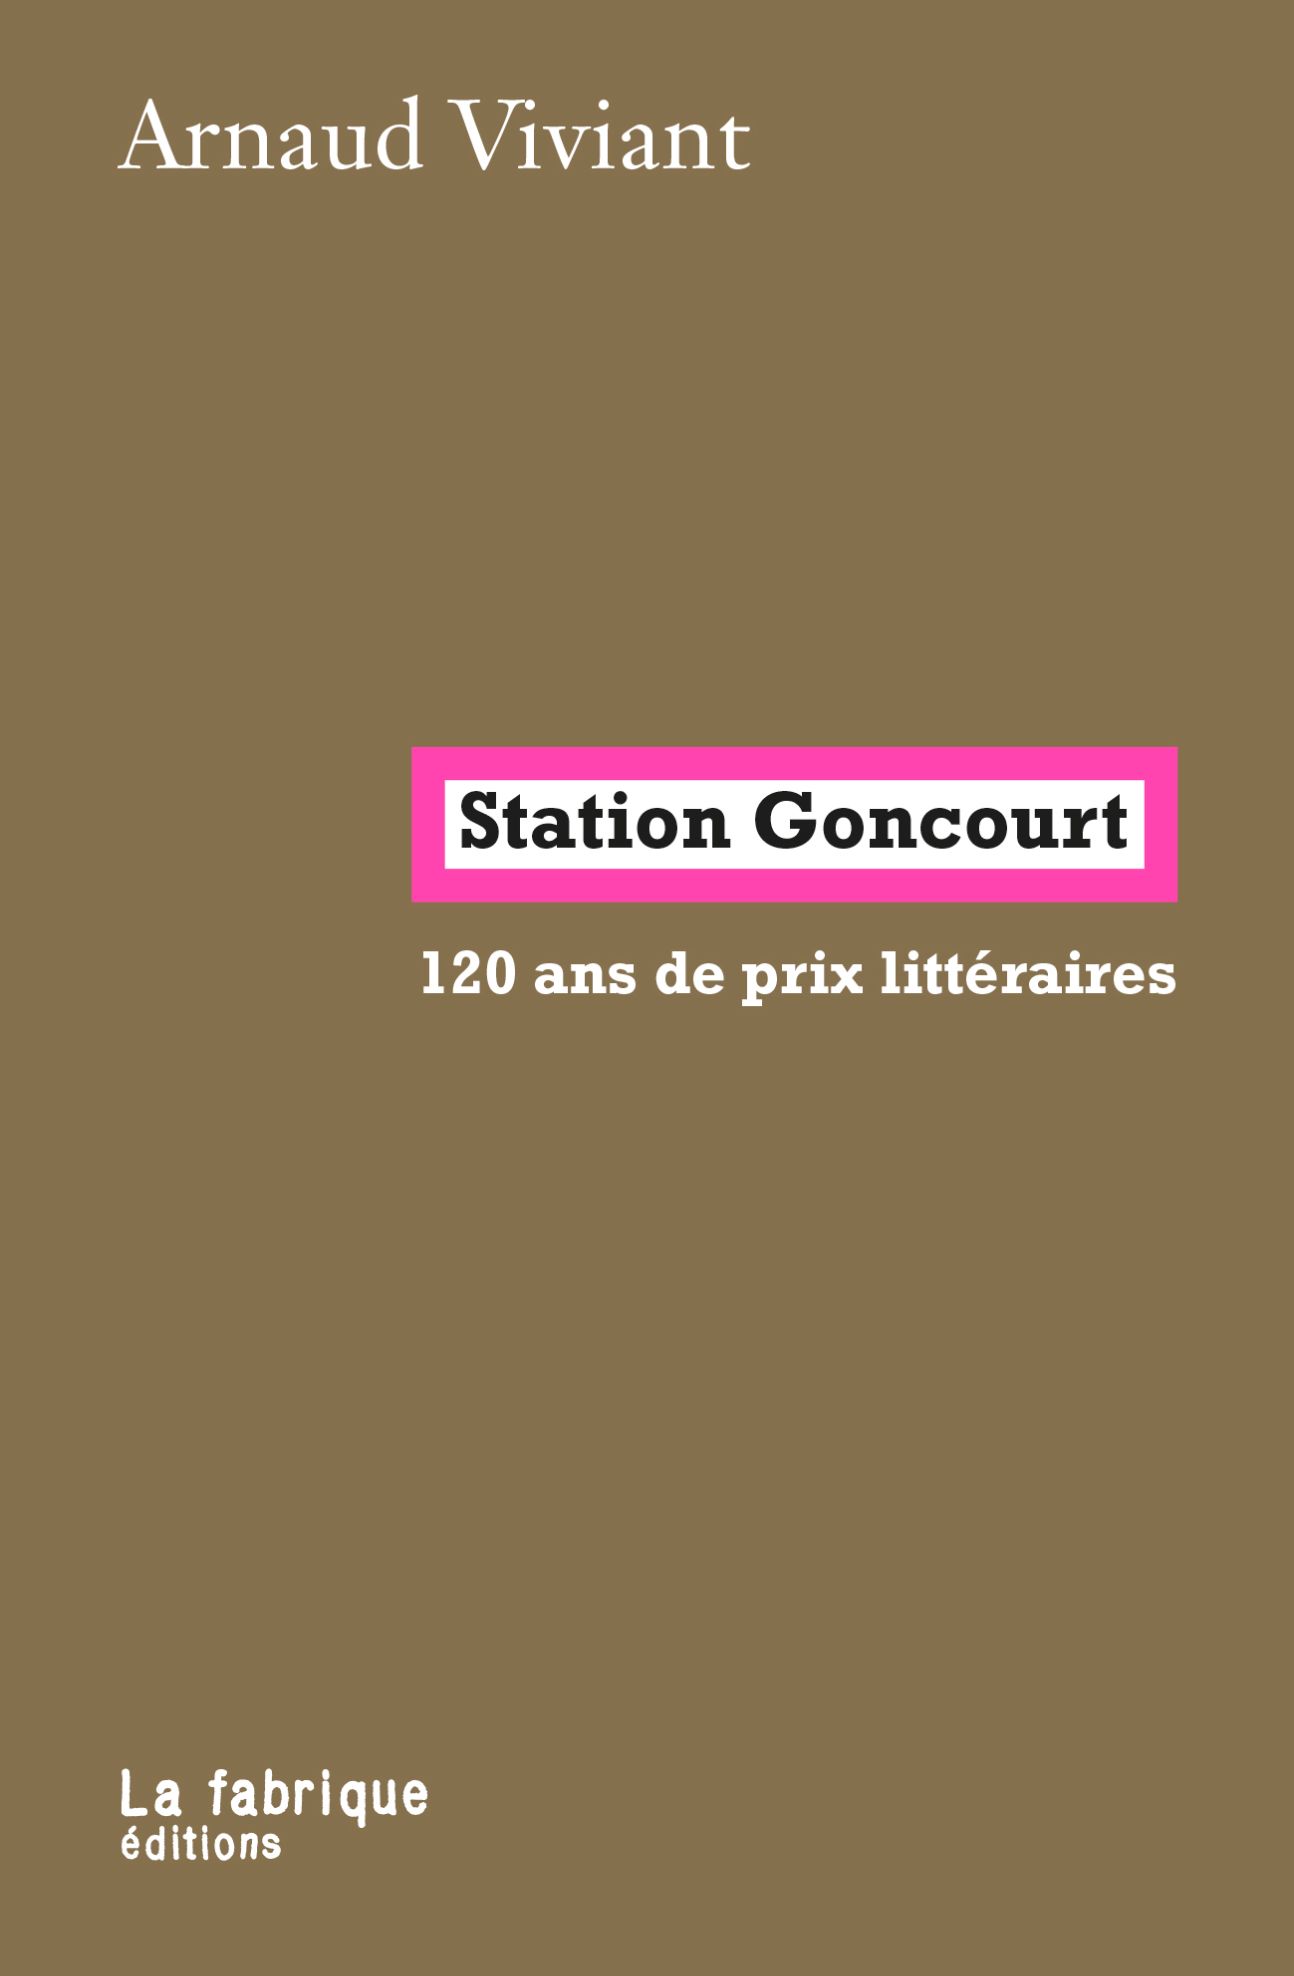 Arnaud Viviant, Station Goncourt. 120 ans de prix littéraires